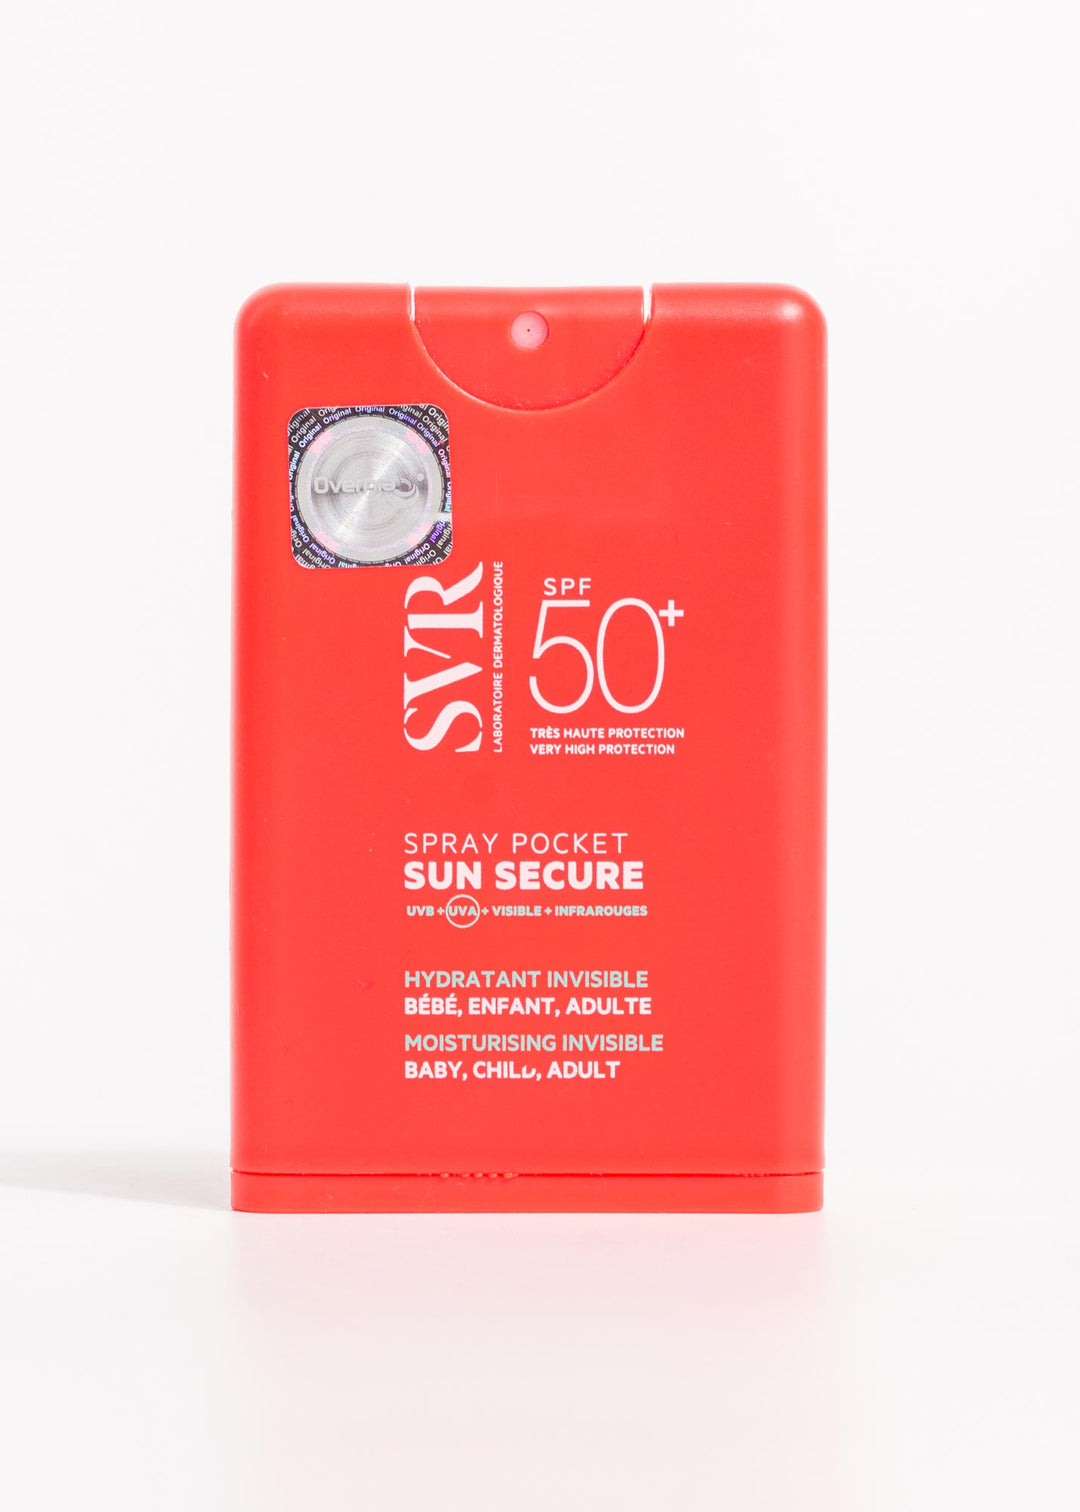 precio de sun secure spray pocket romanamx